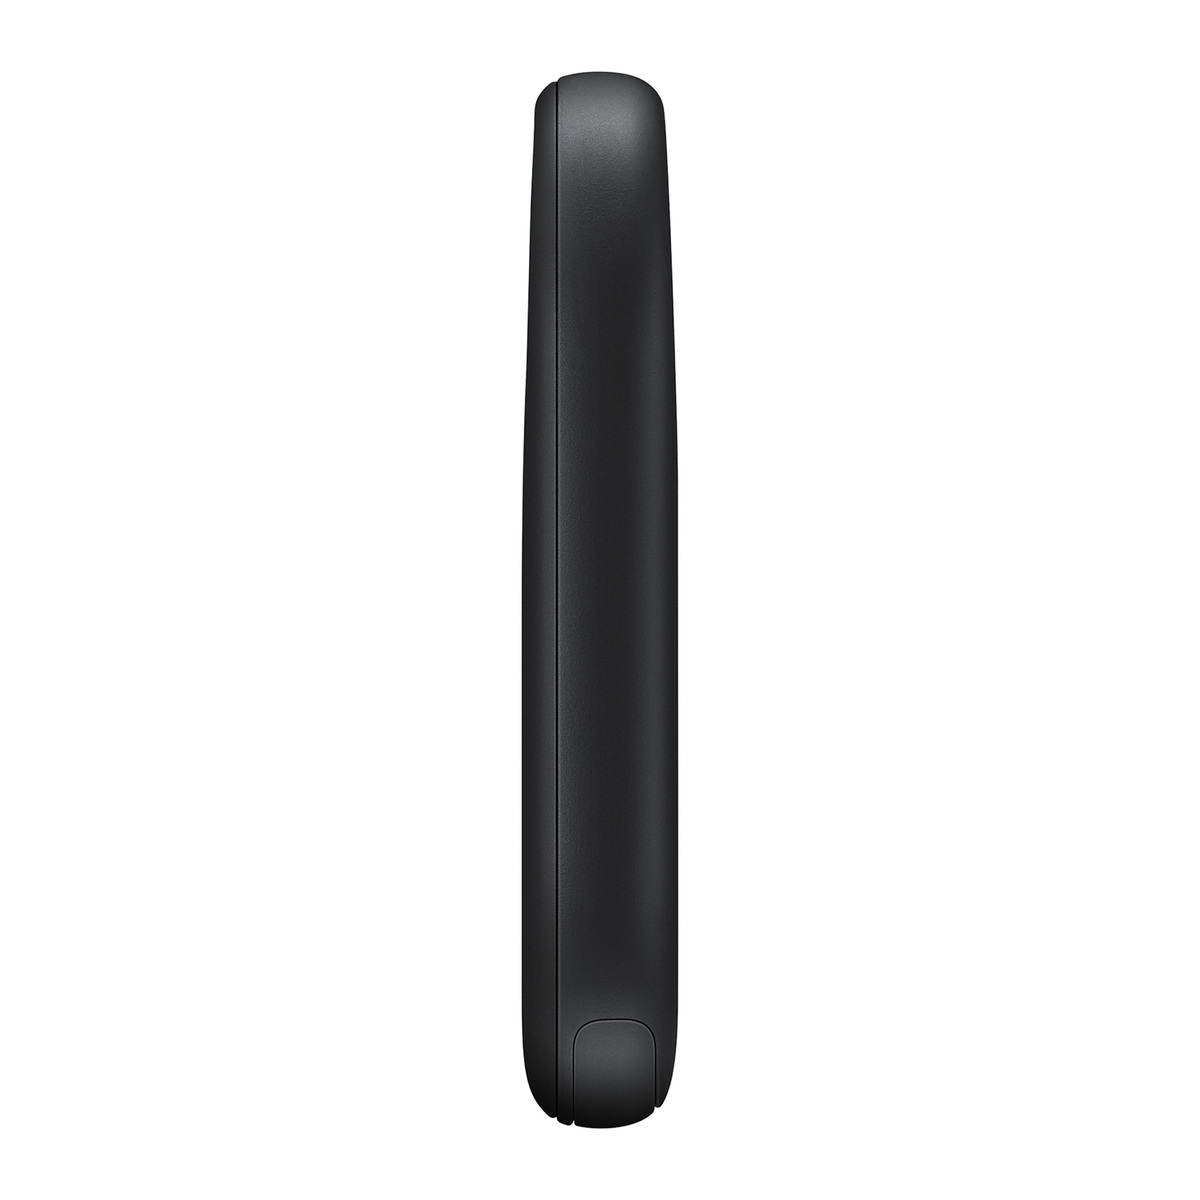 Samsung SmartTag 2, Black, T5600BBEG